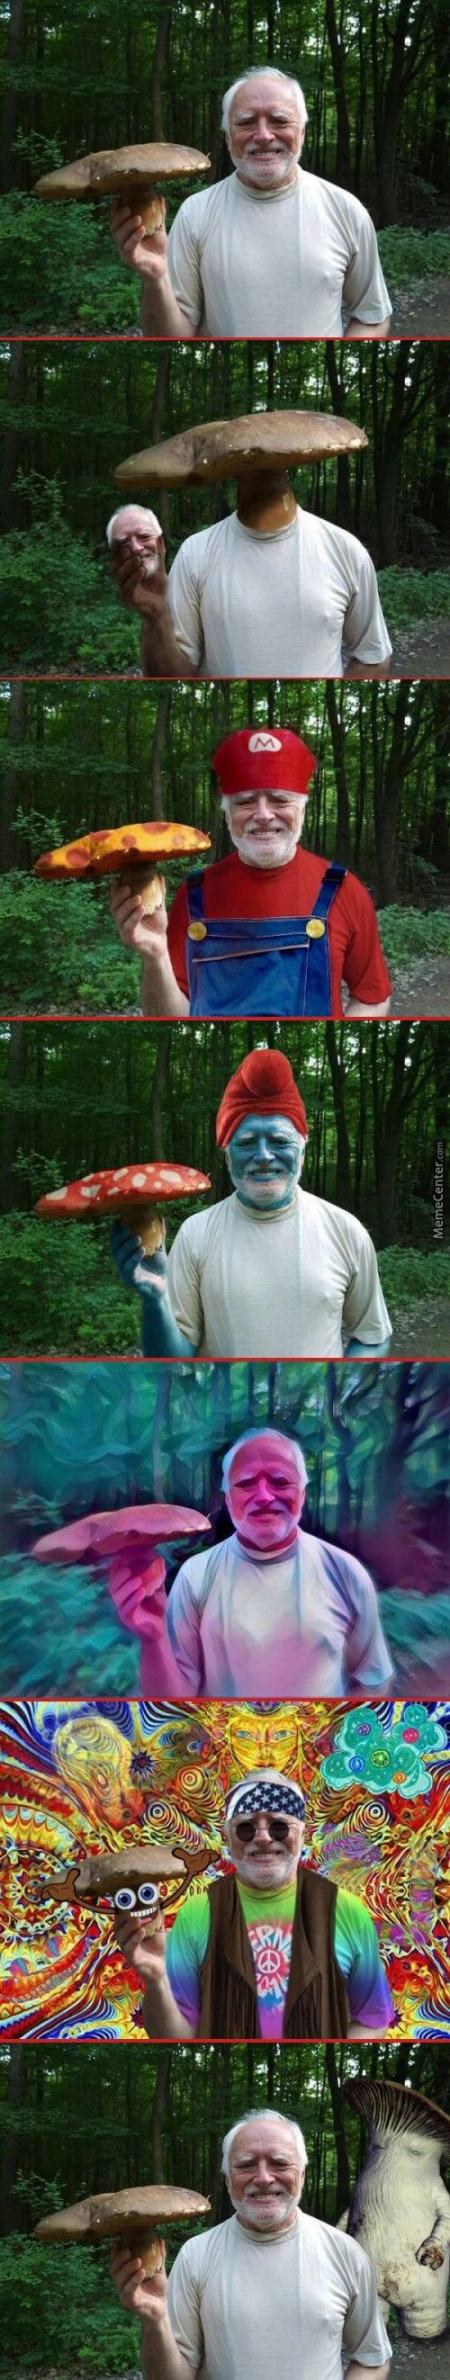 Obrázek mushroom harold